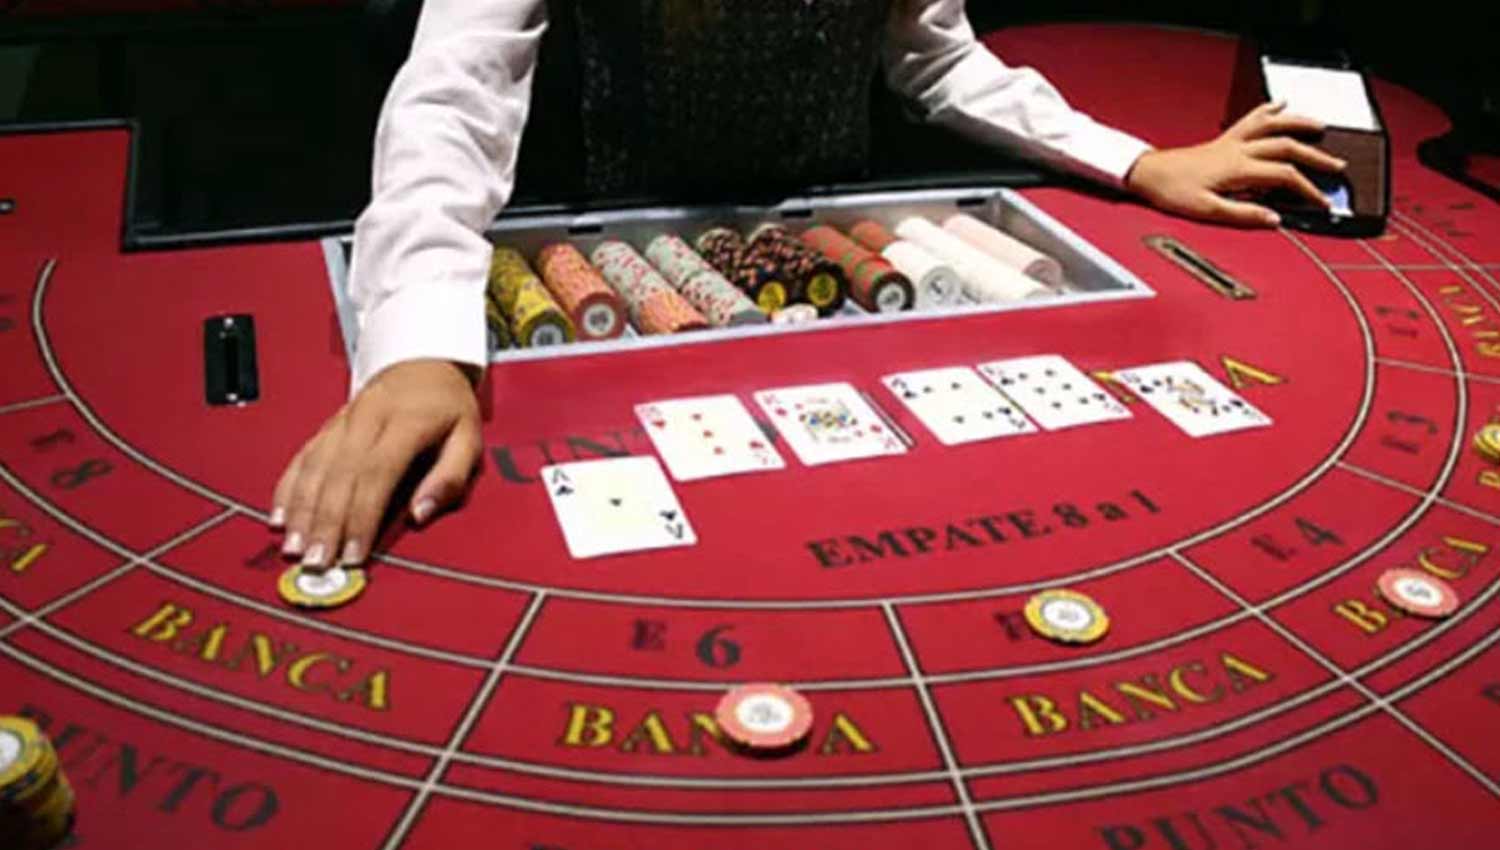 Top Baccarat Online Casinos Uk